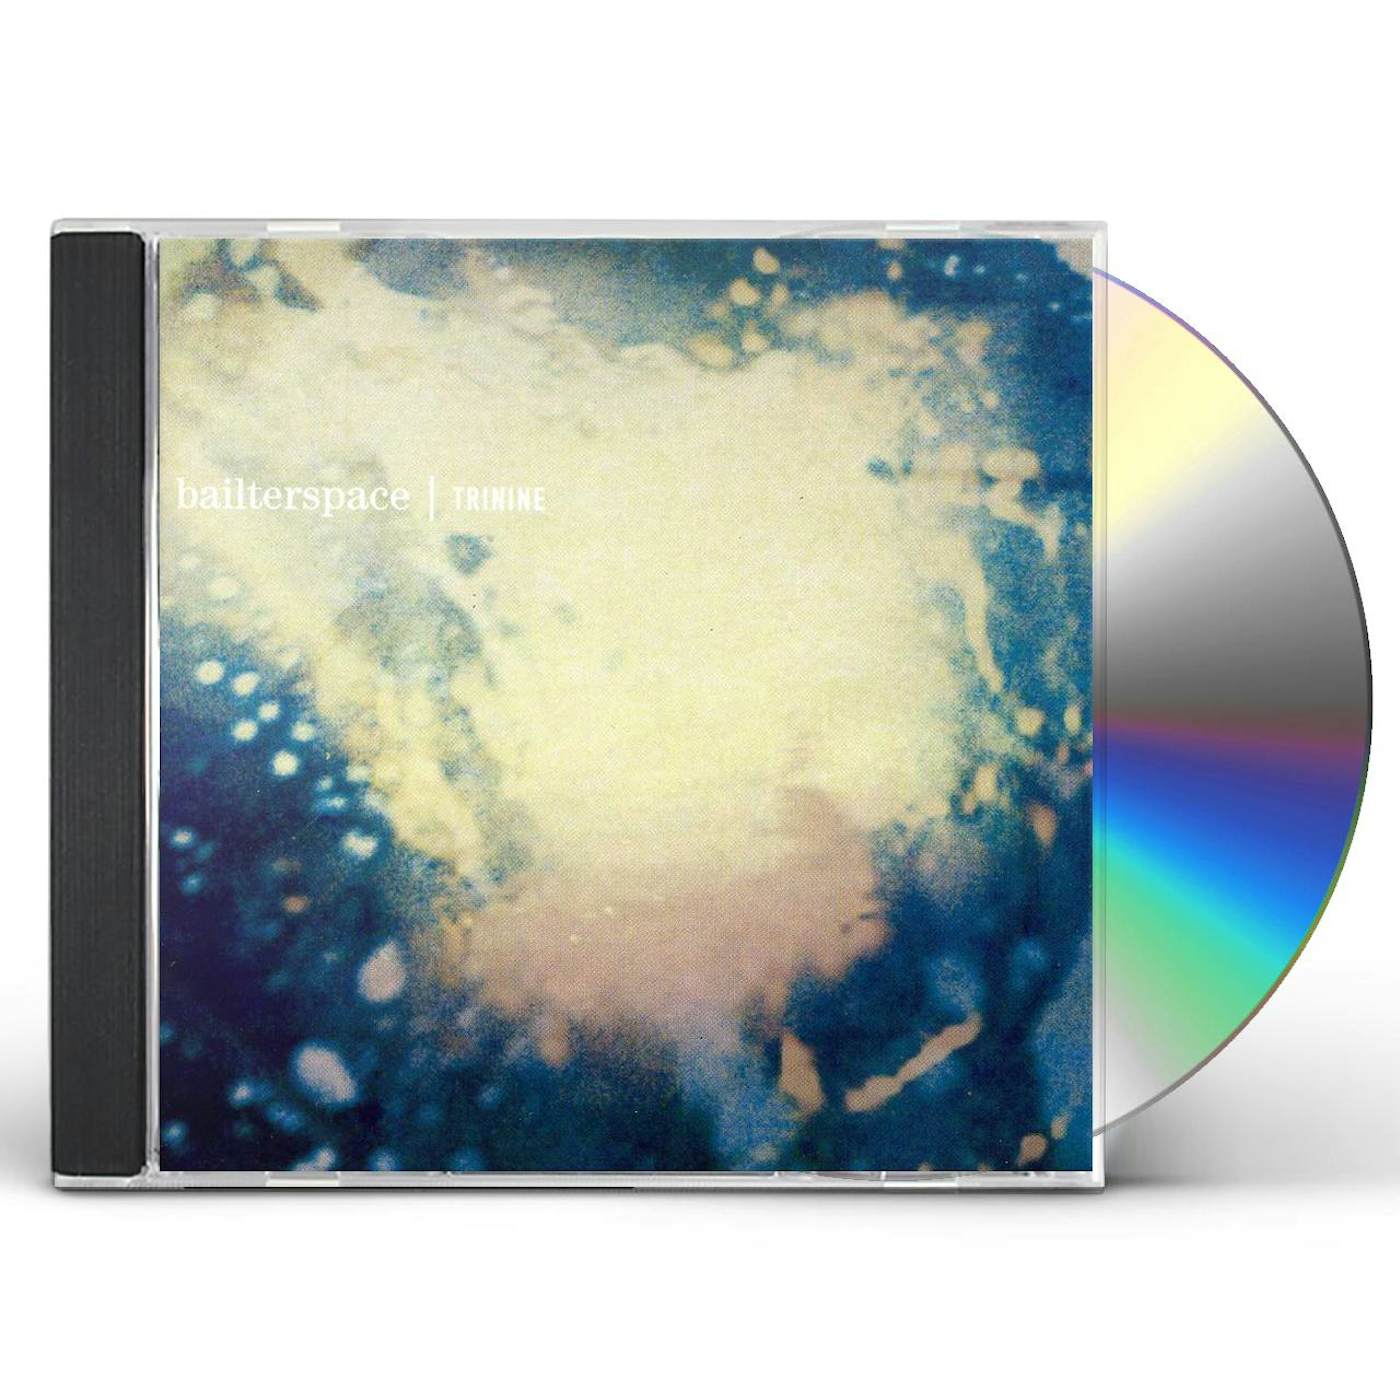 Bailter Space TRININE CD